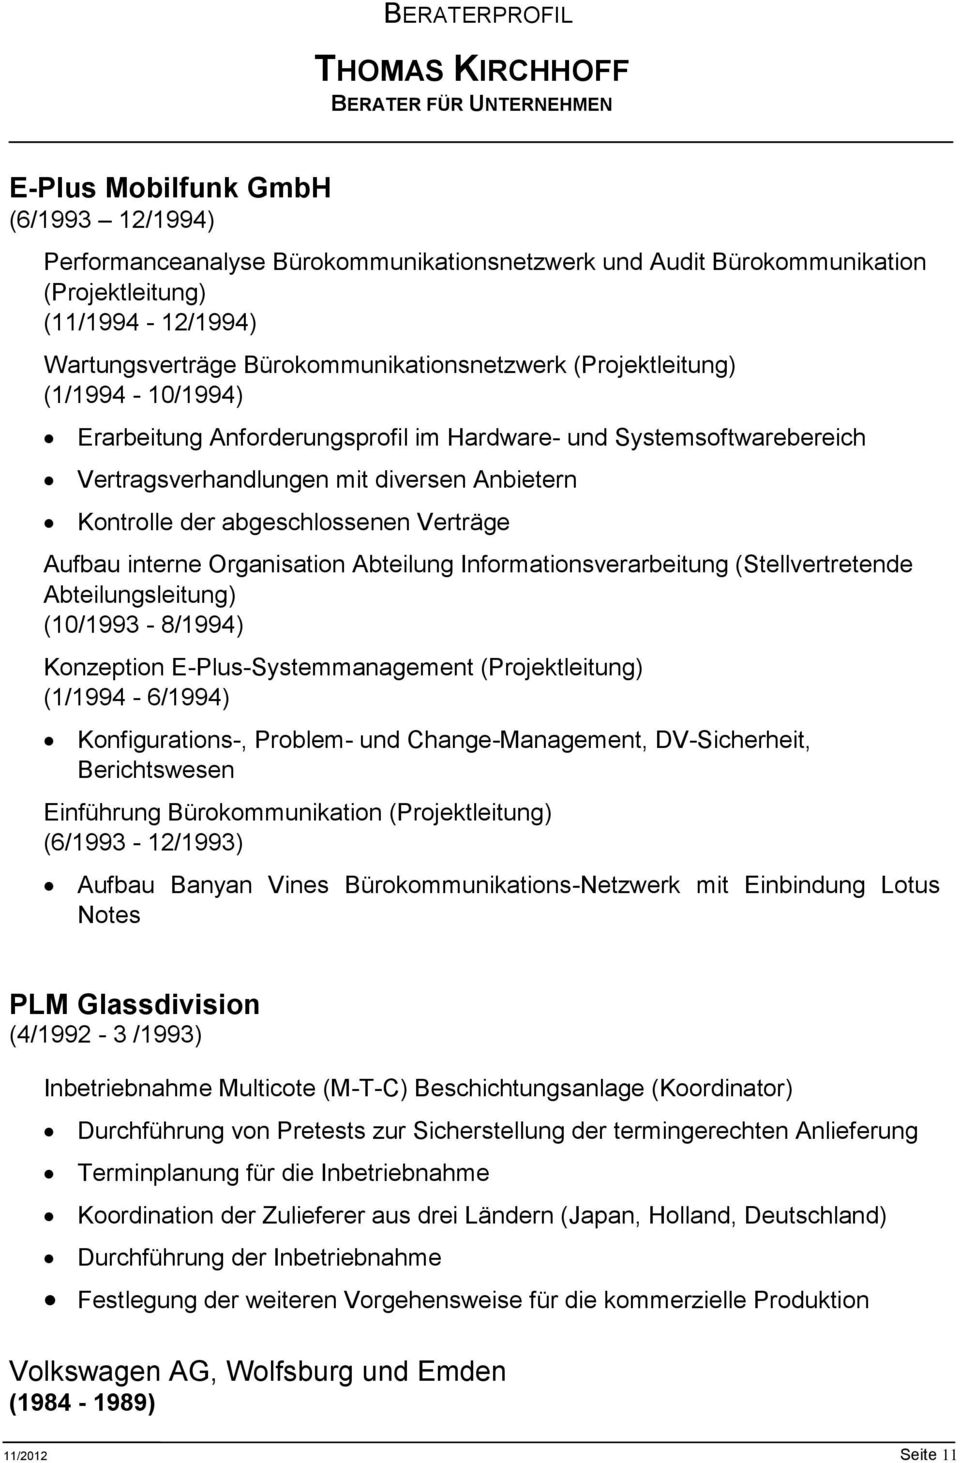 interne Organisation Abteilung Informationsverarbeitung (Stellvertretende Abteilungsleitung) (10/1993-8/1994) Konzeption E-Plus-Systemmanagement (Projektleitung) (1/1994-6/1994) Konfigurations-,